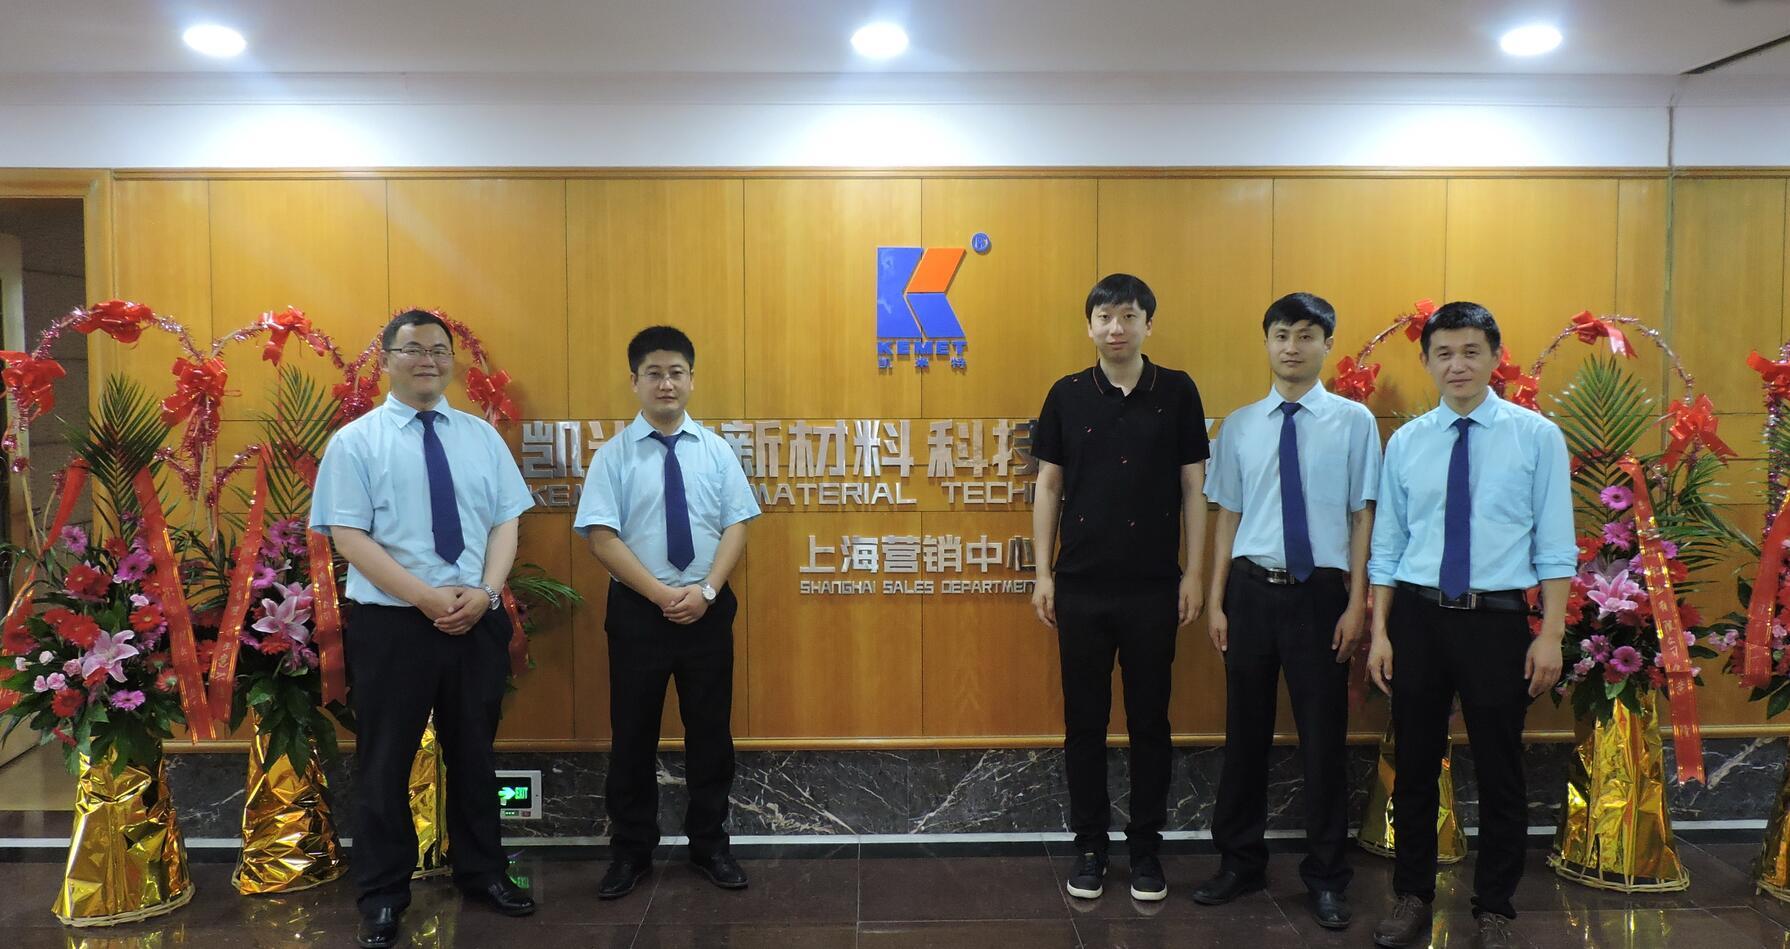 Warmly celebrate the official establishment of Kemet's Shanghai marketing center